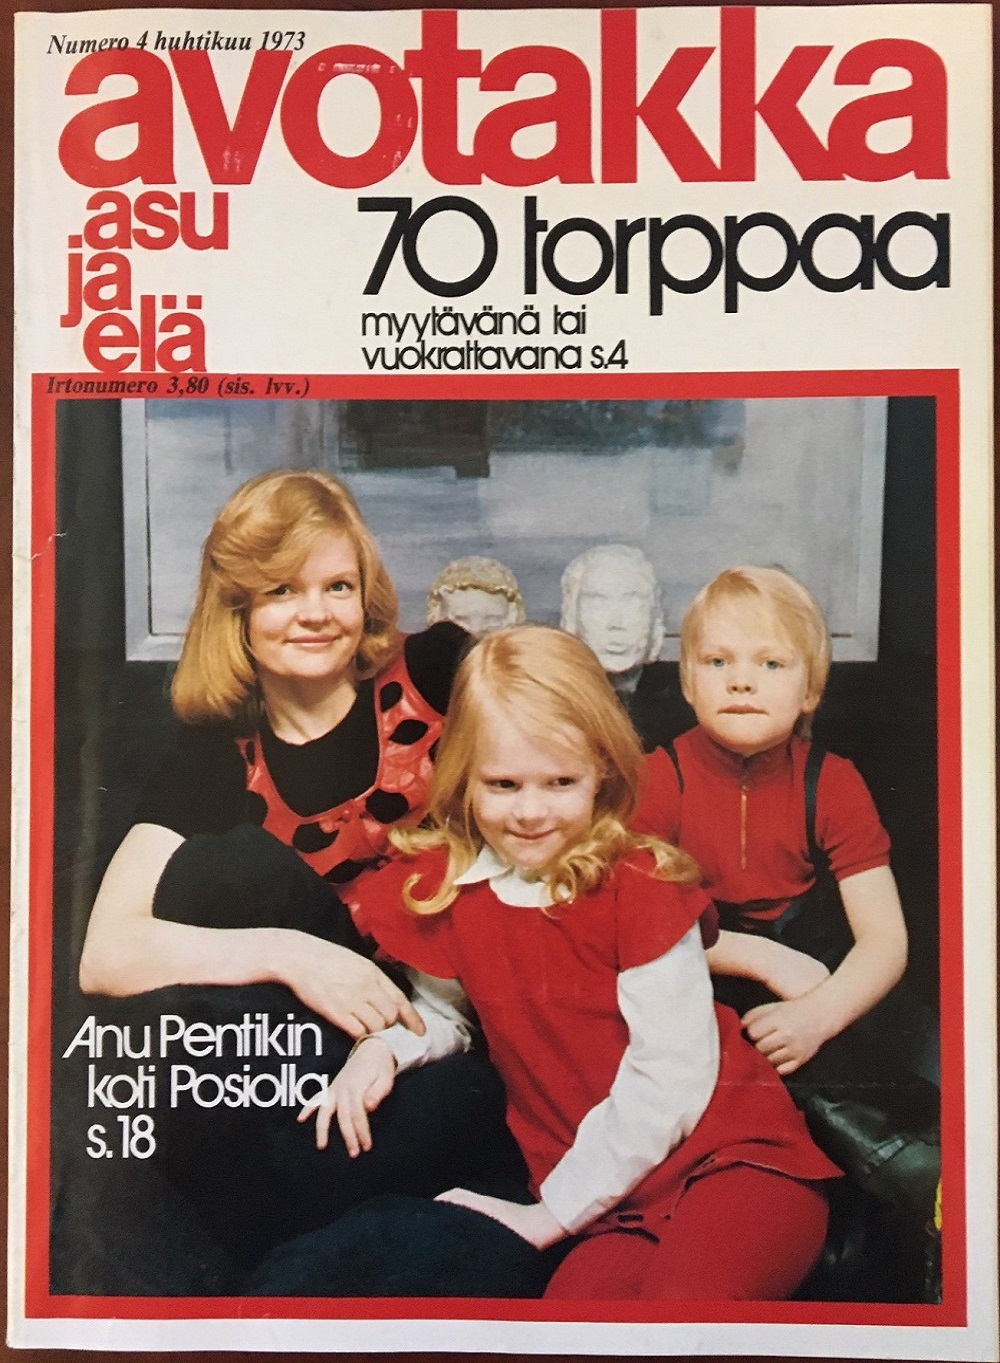 Avotakka April 1973 Issue - Cover